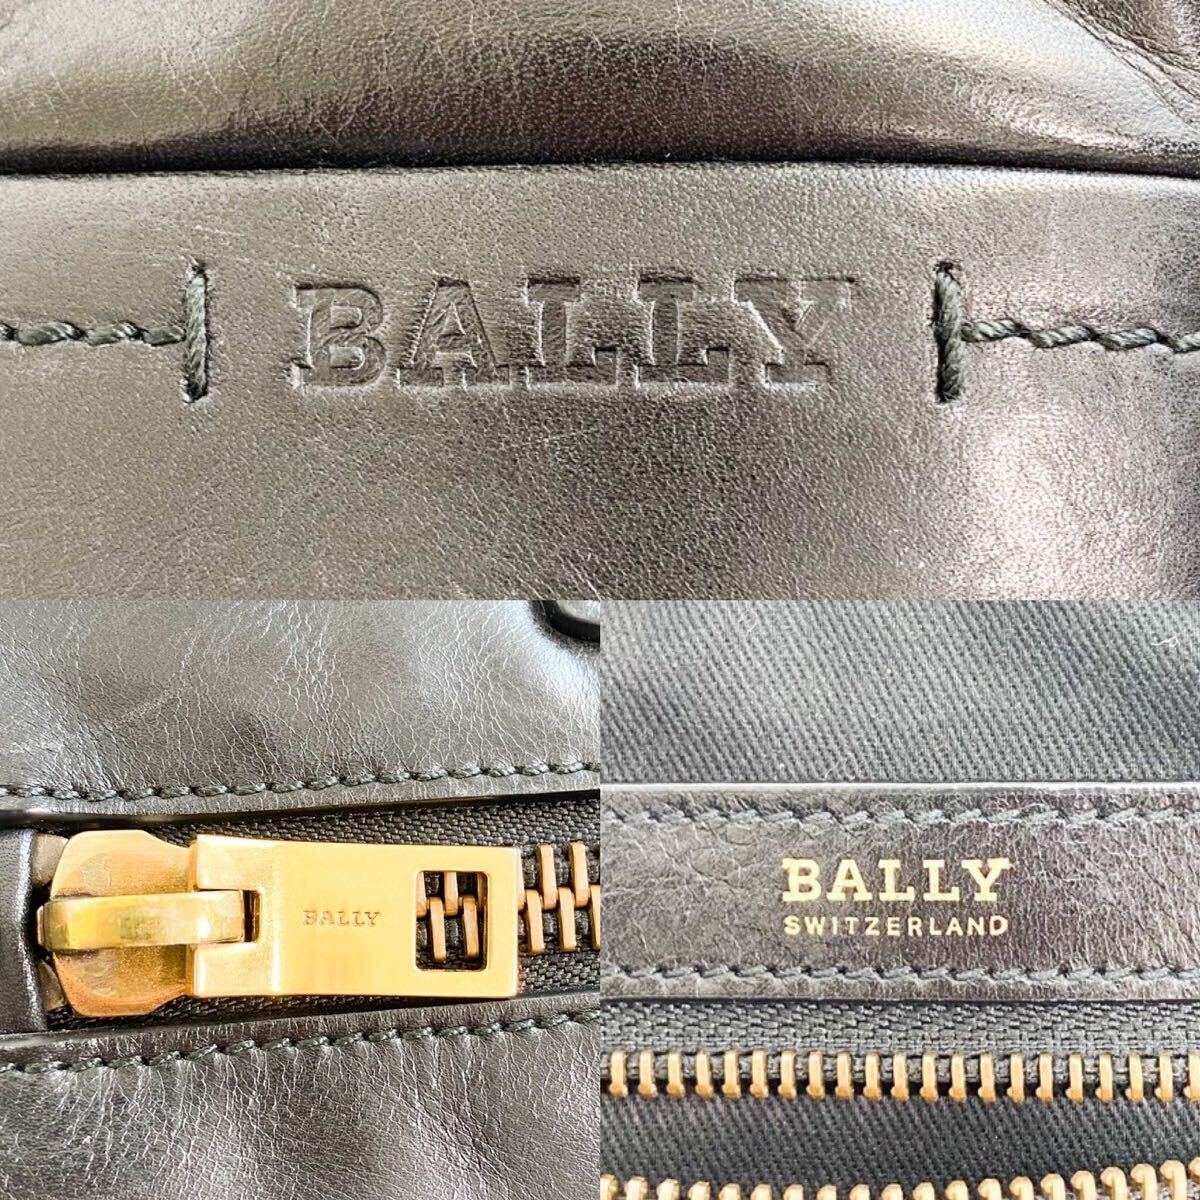  большая вместимость прекрасный товар BALLY Bally большая сумка портфель черный чёрный кожа натуральная кожа A4 PC плечо .. мужской ходить на работу посещение школы tore spo 